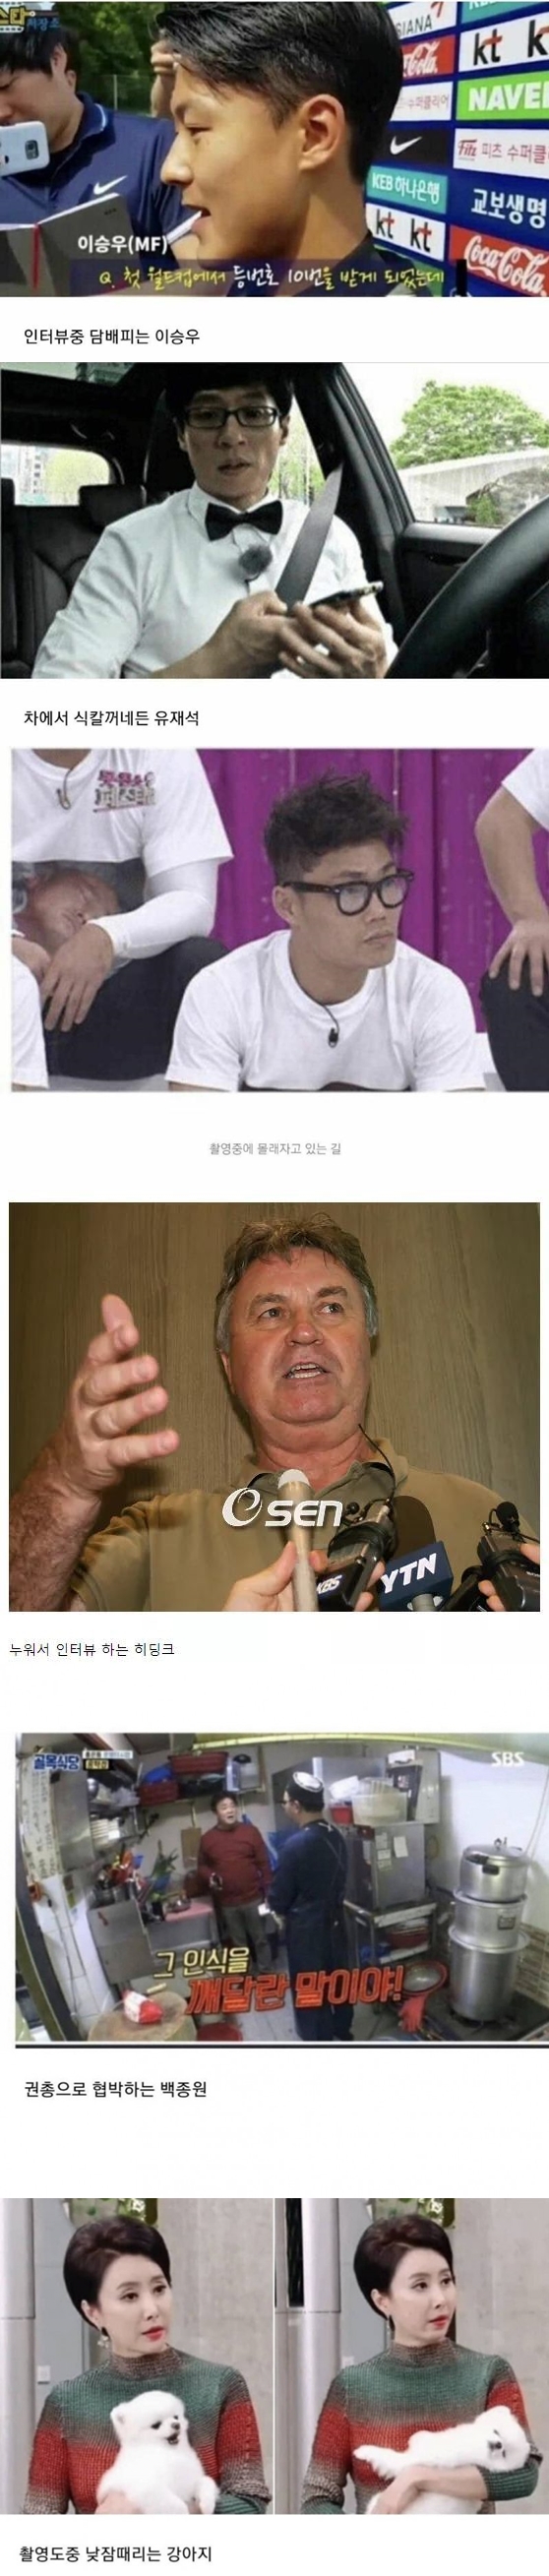 대한민국 역6대 방송 태도 논란